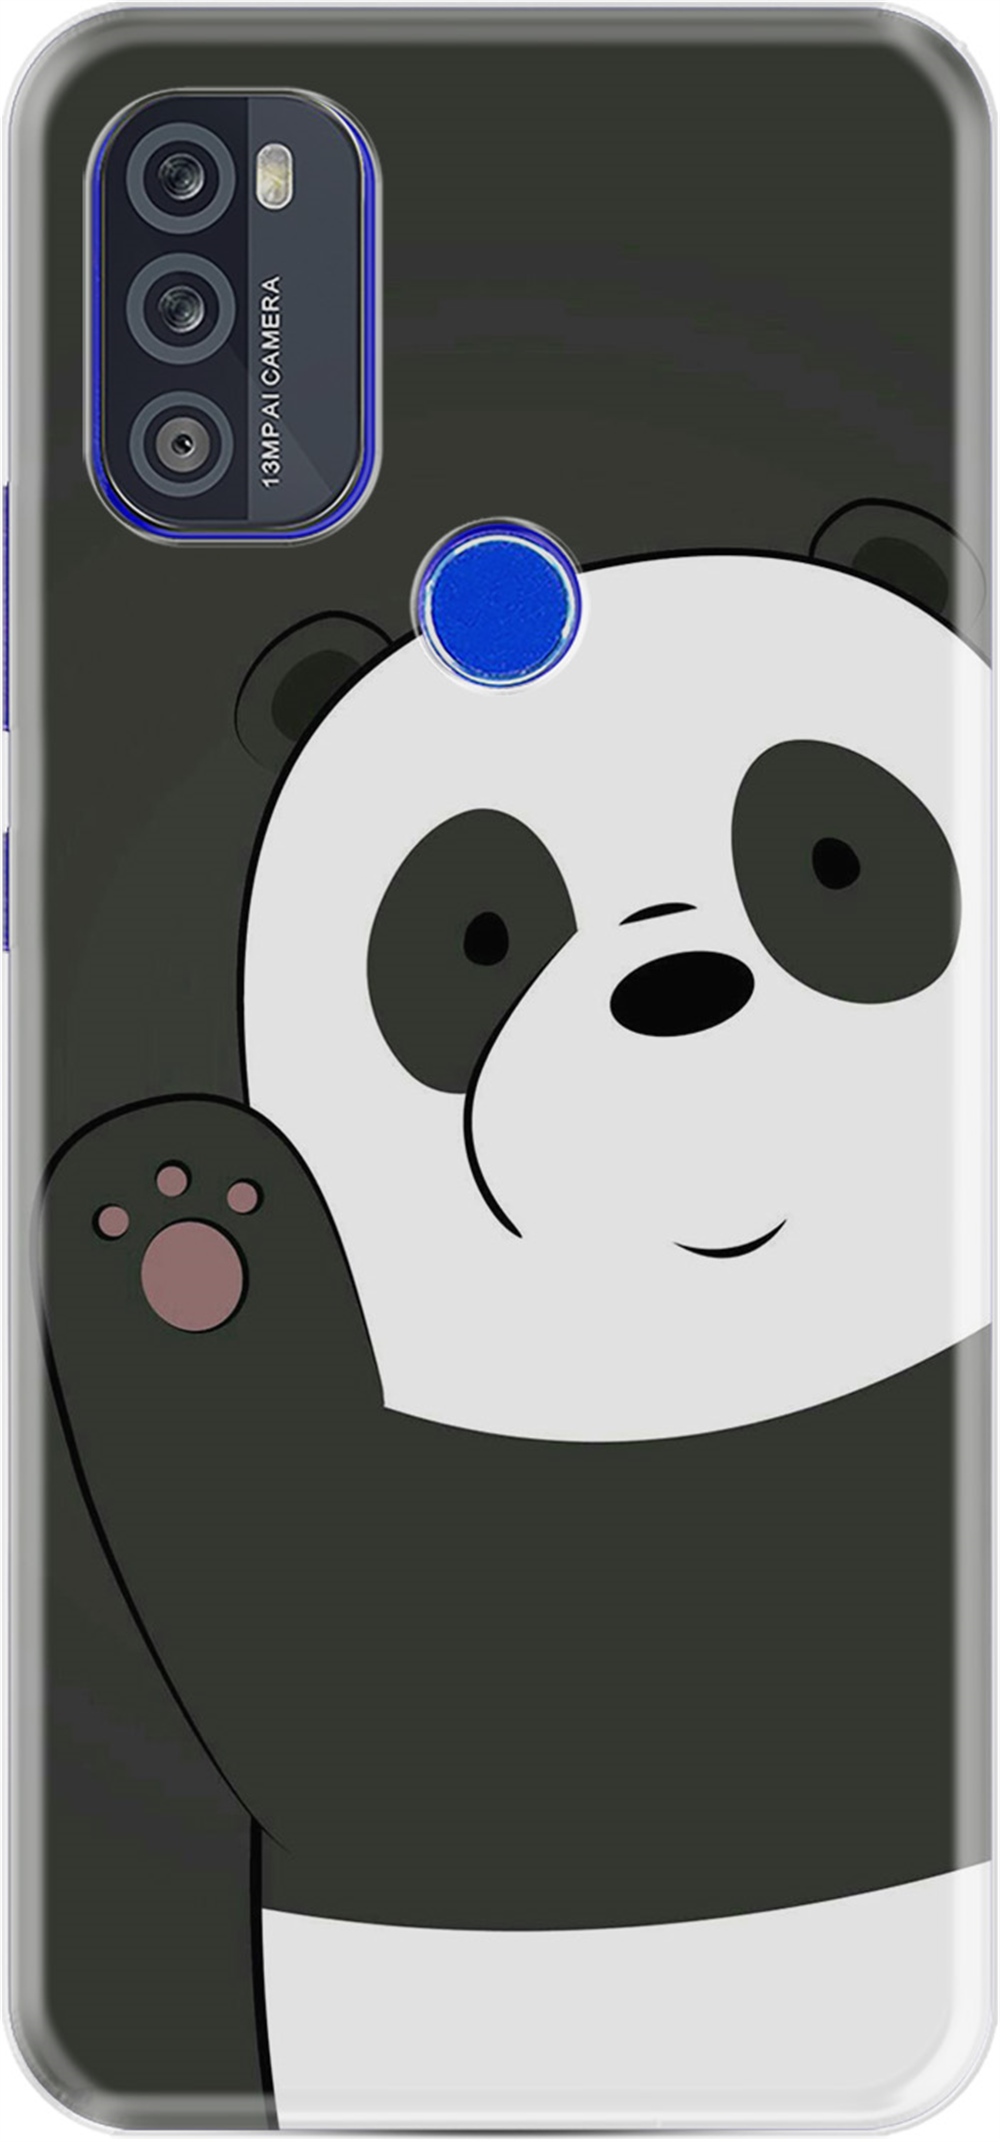 Reeder P13 Blue Max Pro 256GB Kılıfları Kılıf Silikon Desen Özel Seri Hello  Panda 1709